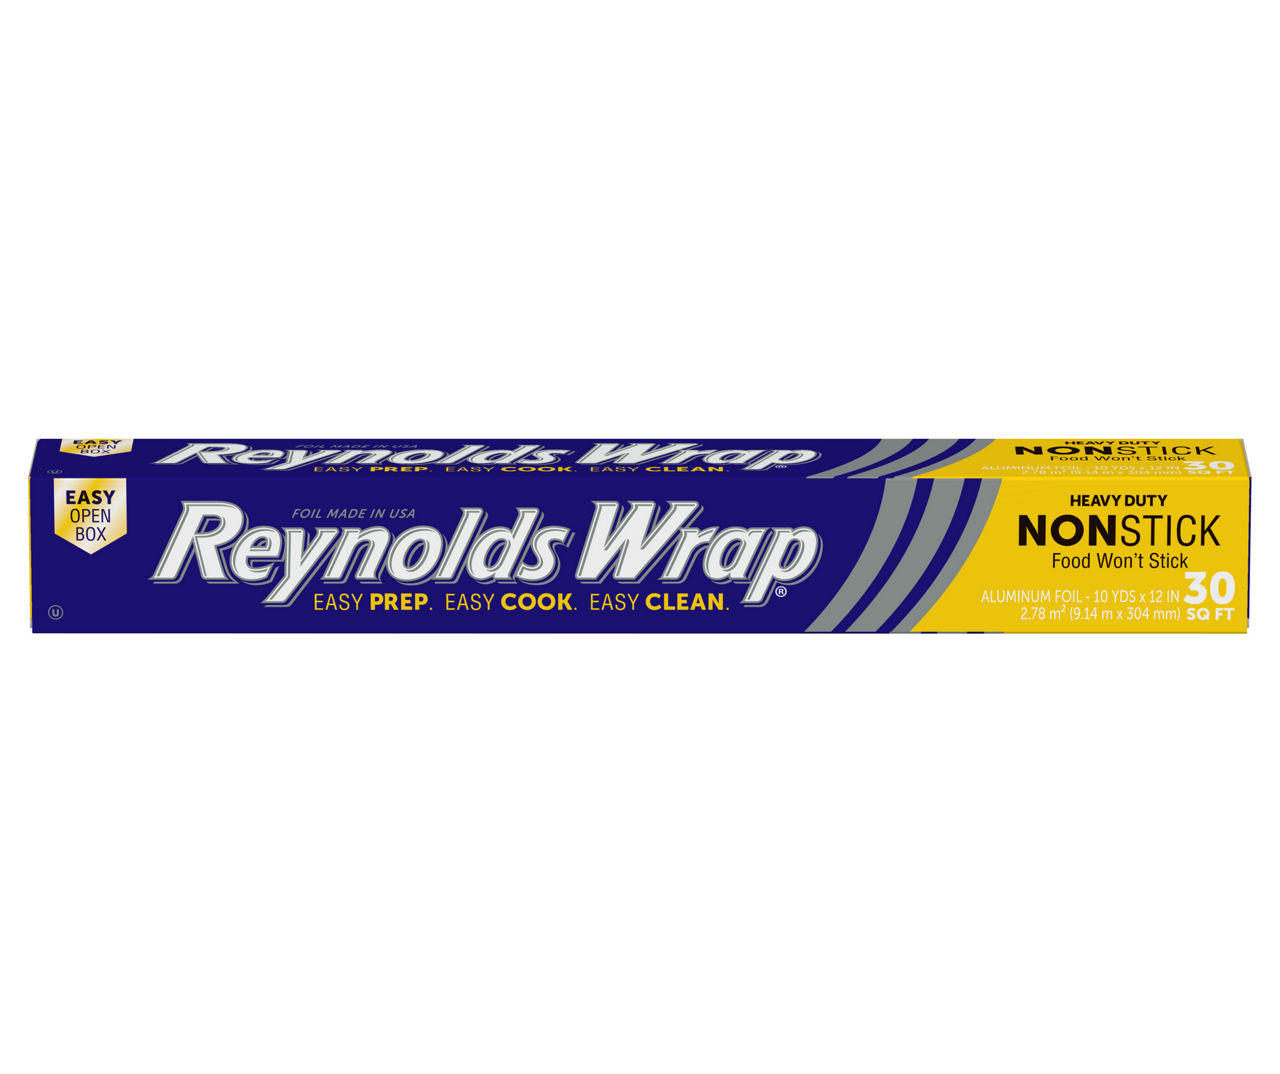 Reynolds Wrap Non Stick Aluminum Foil, 130 Square Feet